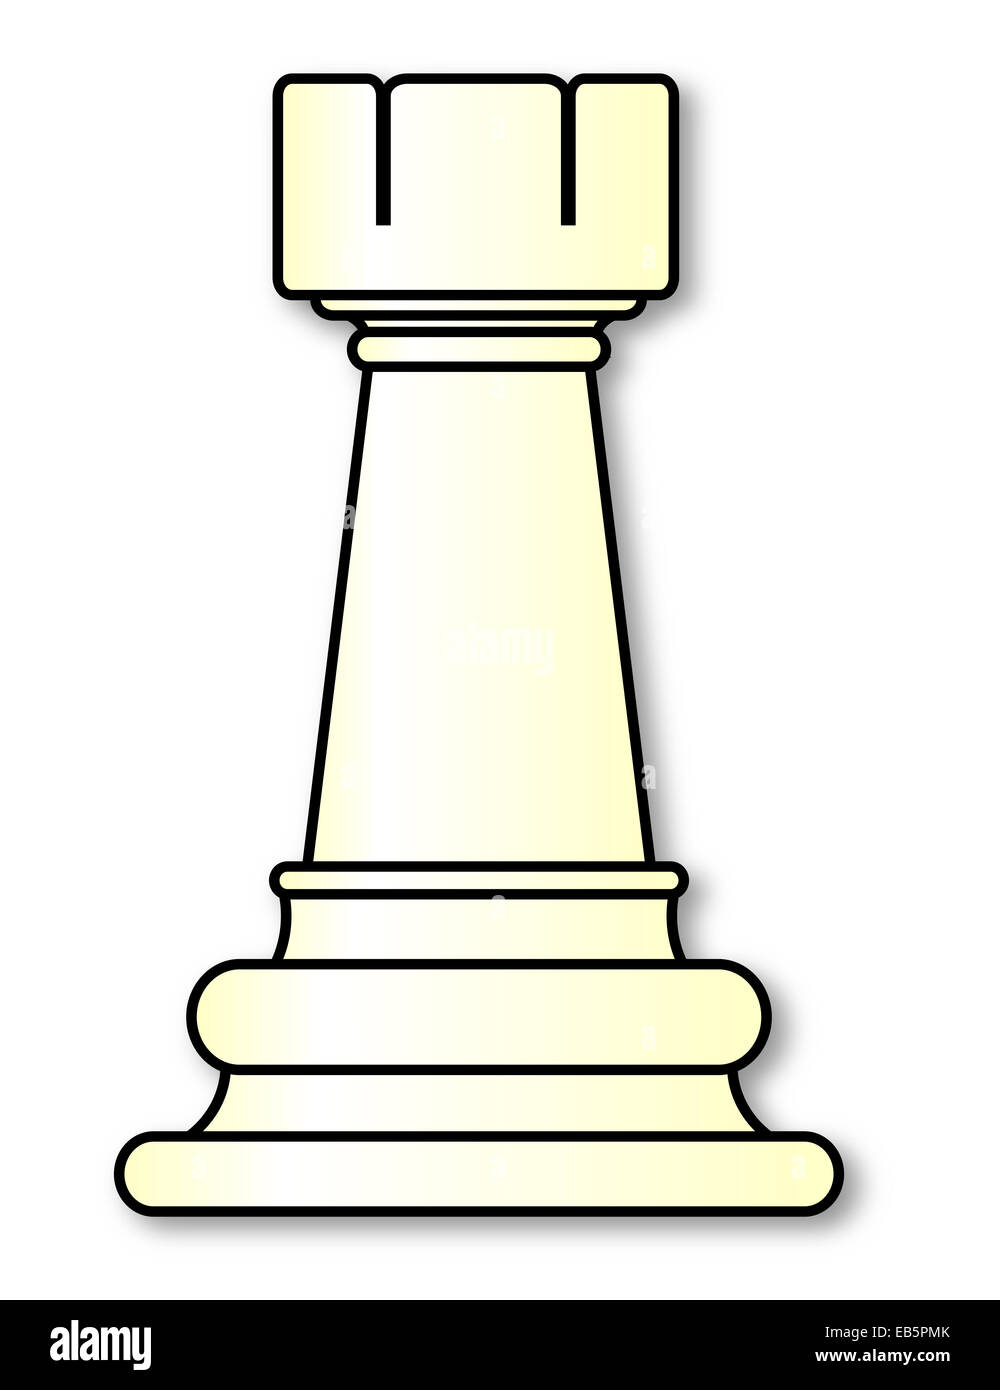 Como se chamam as peças do xadrez em Inglês?.PAWN - PEÃO.ROOK / CASTLE